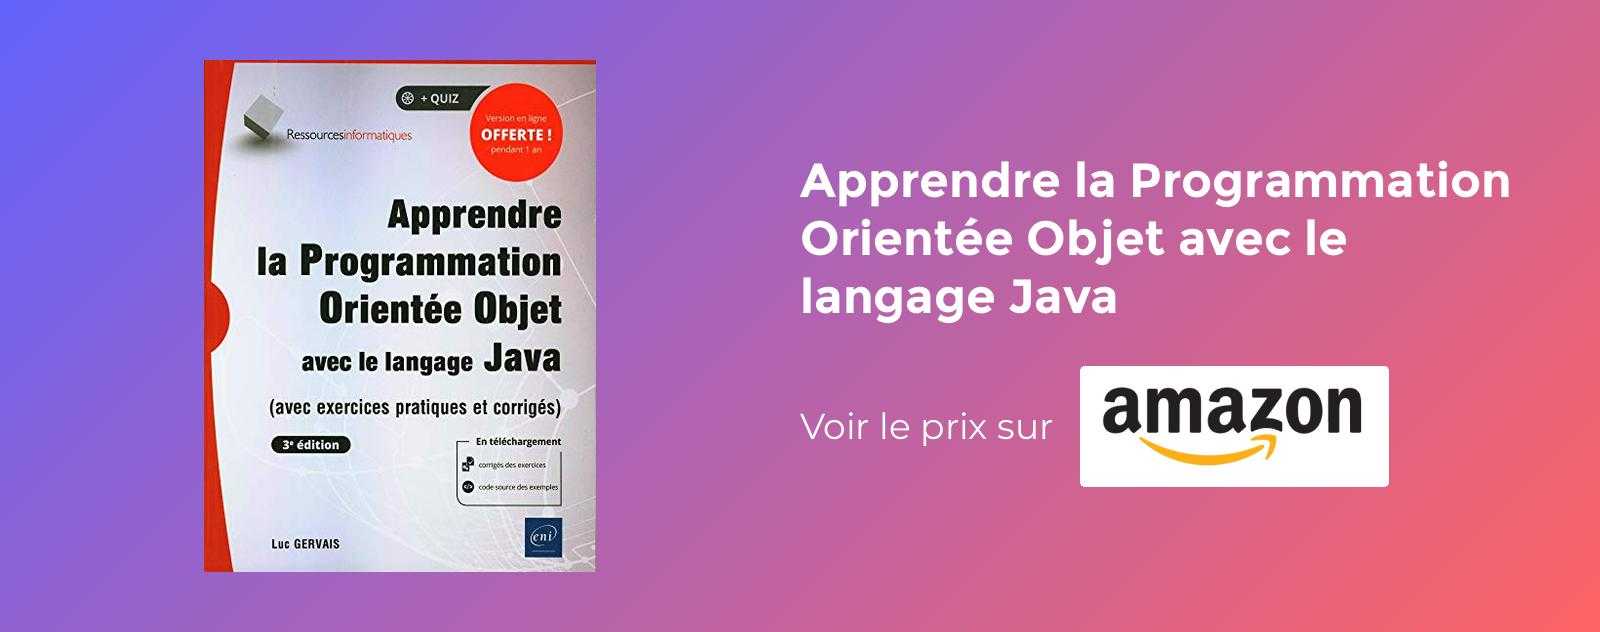 Apprendre la Programmation Orientée Objet avec le langage Java